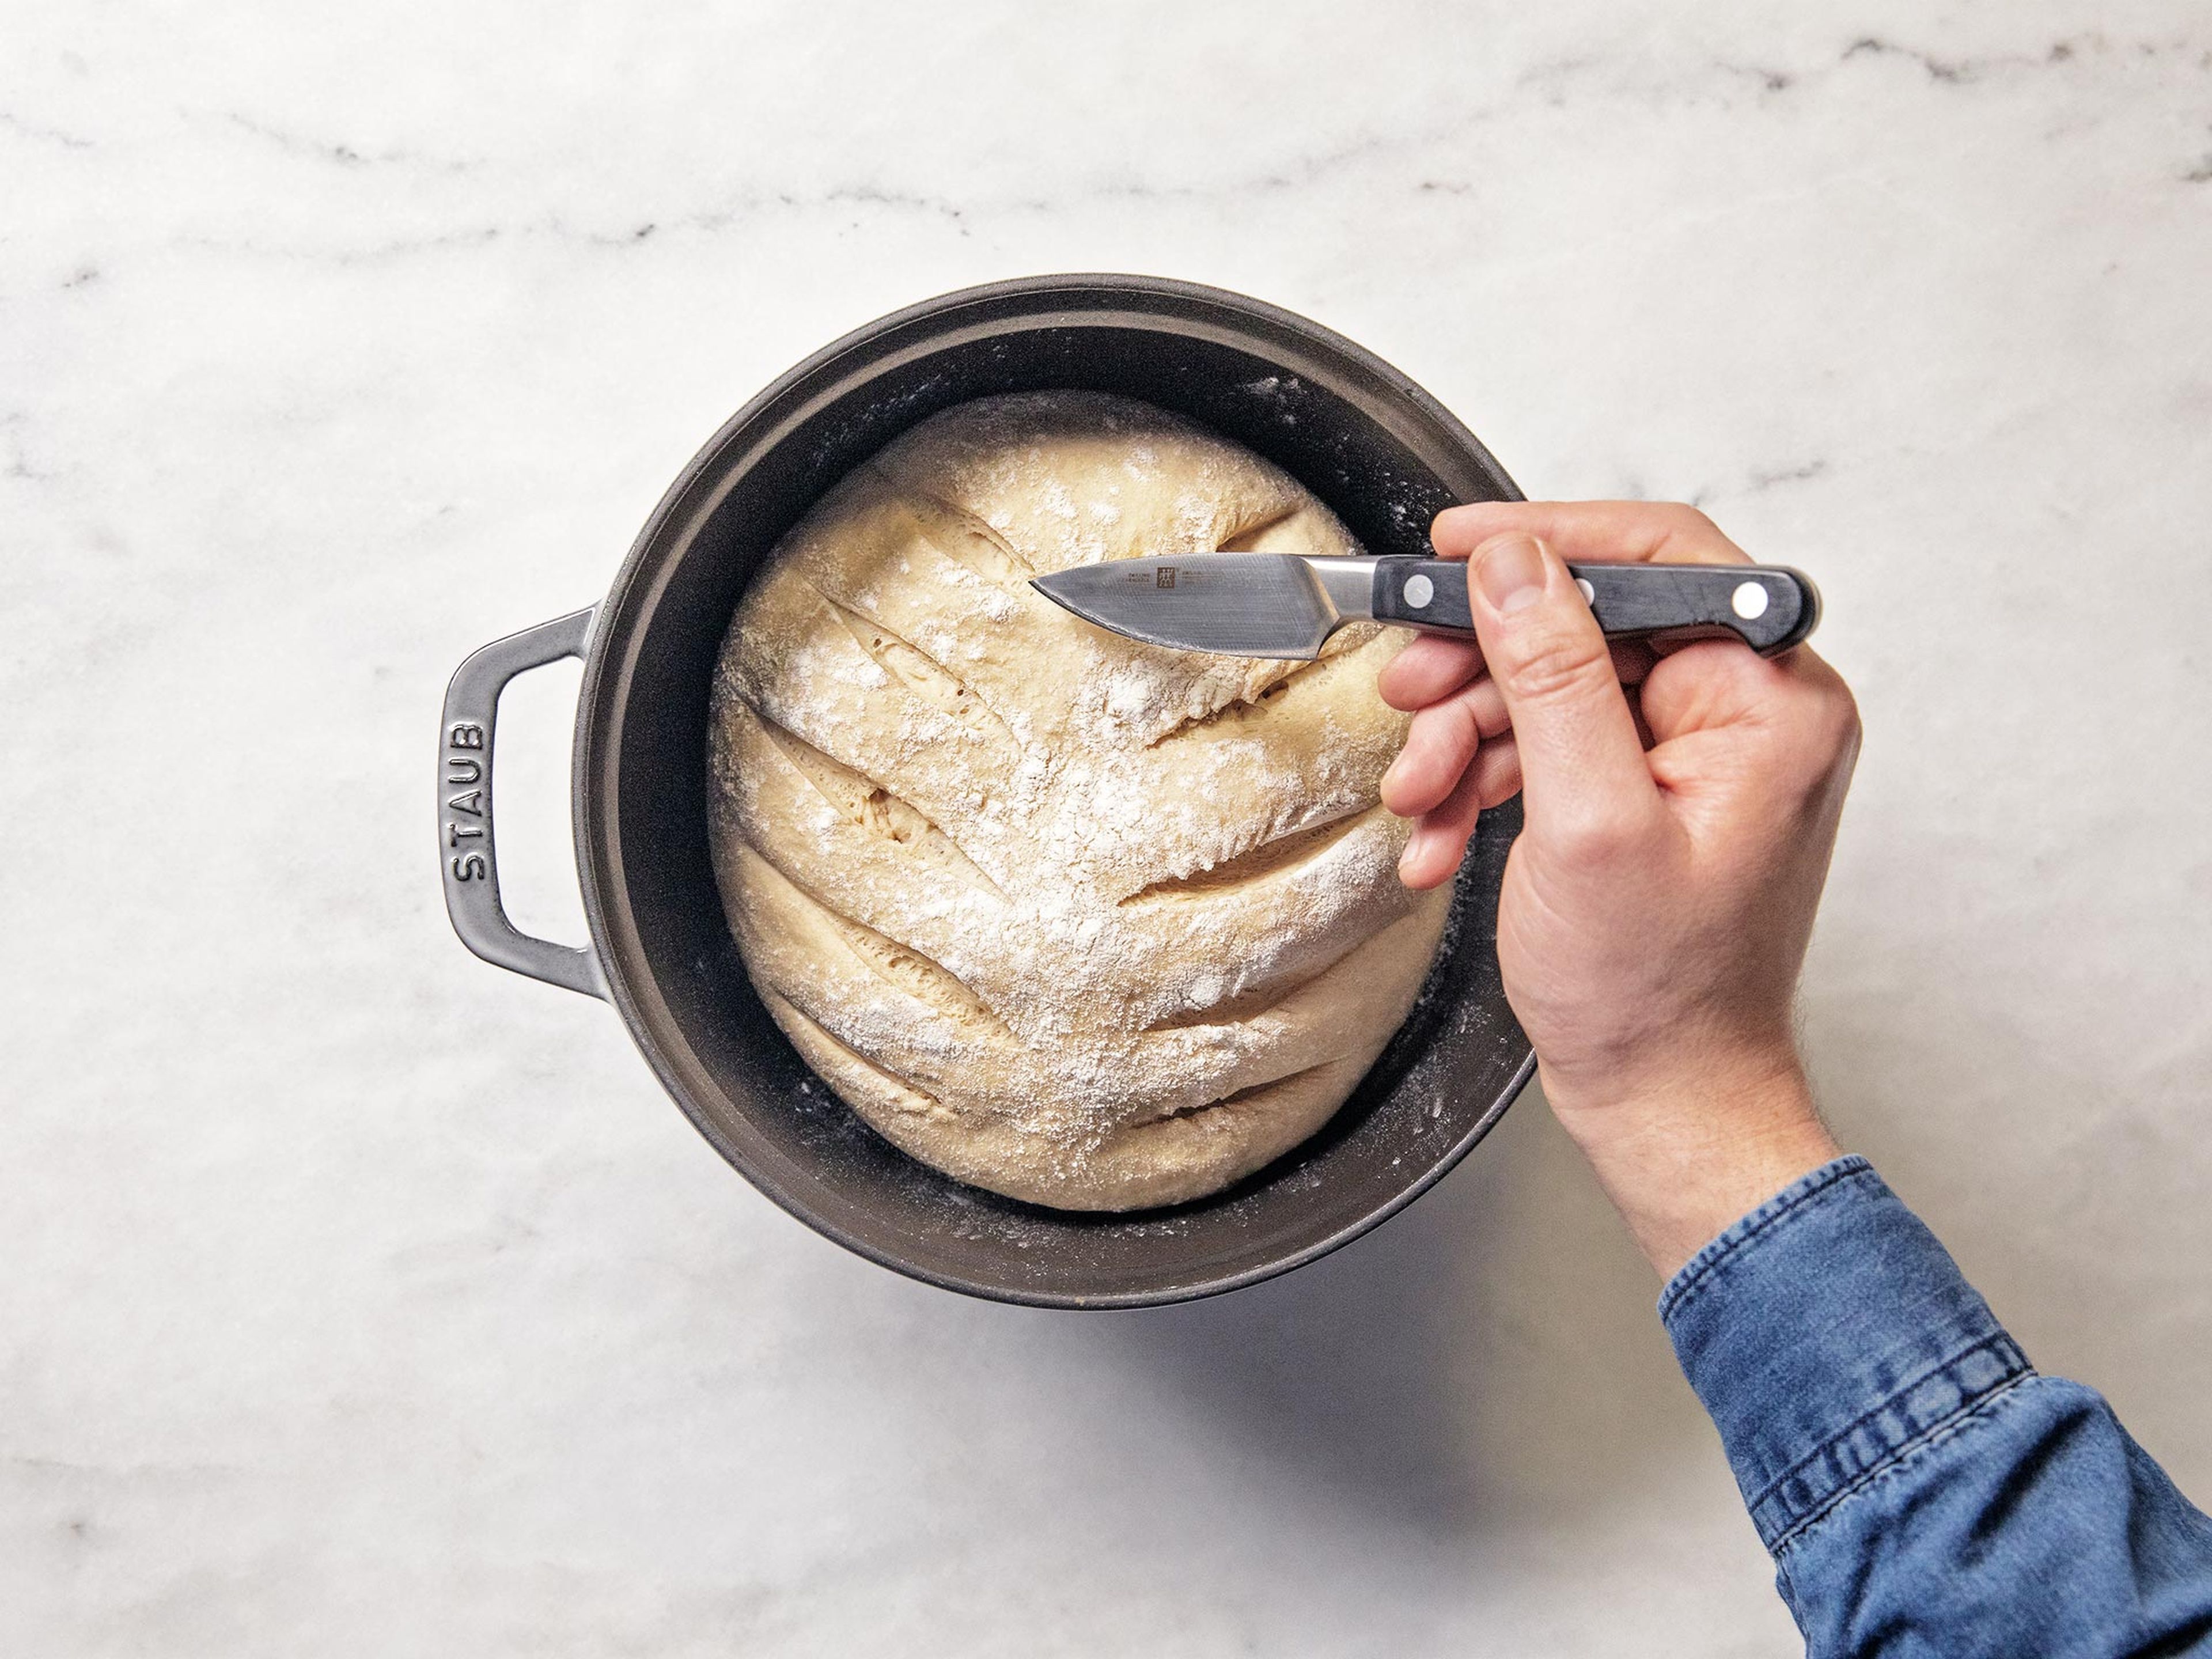 Den Ofen auf 240°C vorheizen. Den fertig gegangenen Teig nach Belieben einschneiden. Deckel aufsetzen und für 45 Min. backen. Das fertige Brot vor dem Einschneiden komplett auskühlen lassen. Guten Appetit!